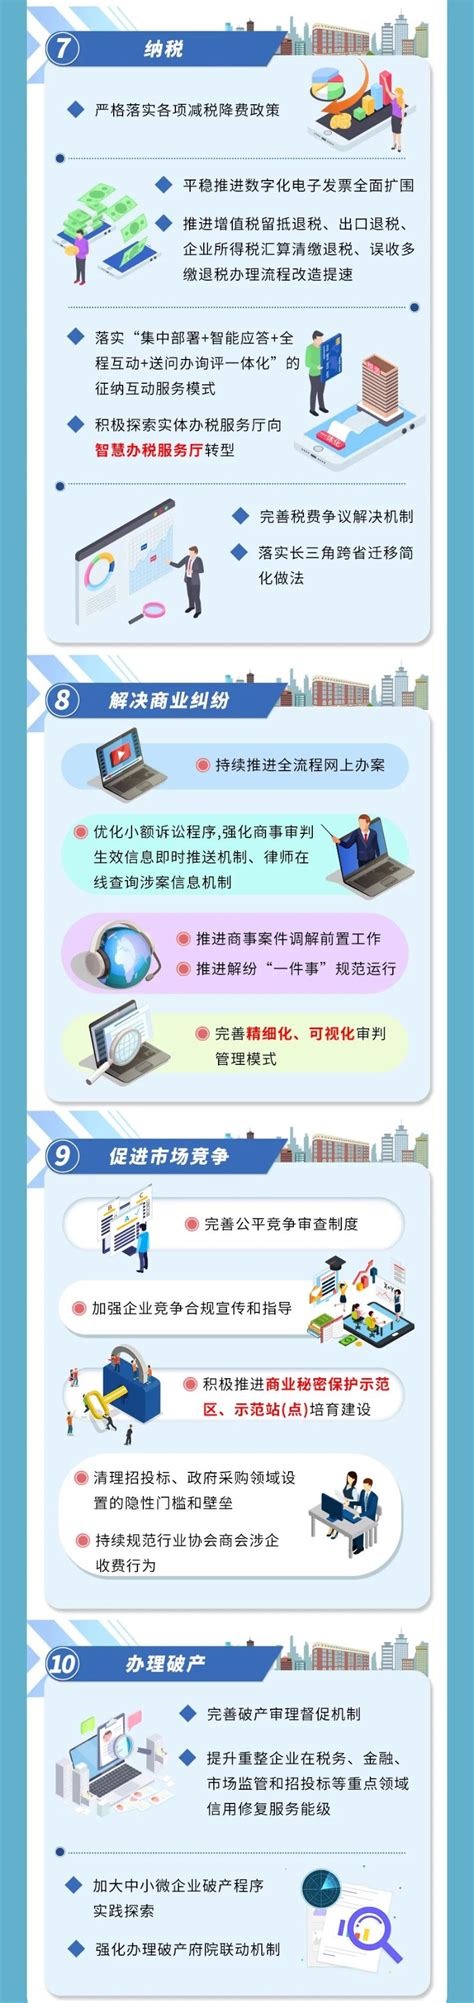 上海市优化营商环境行动方案